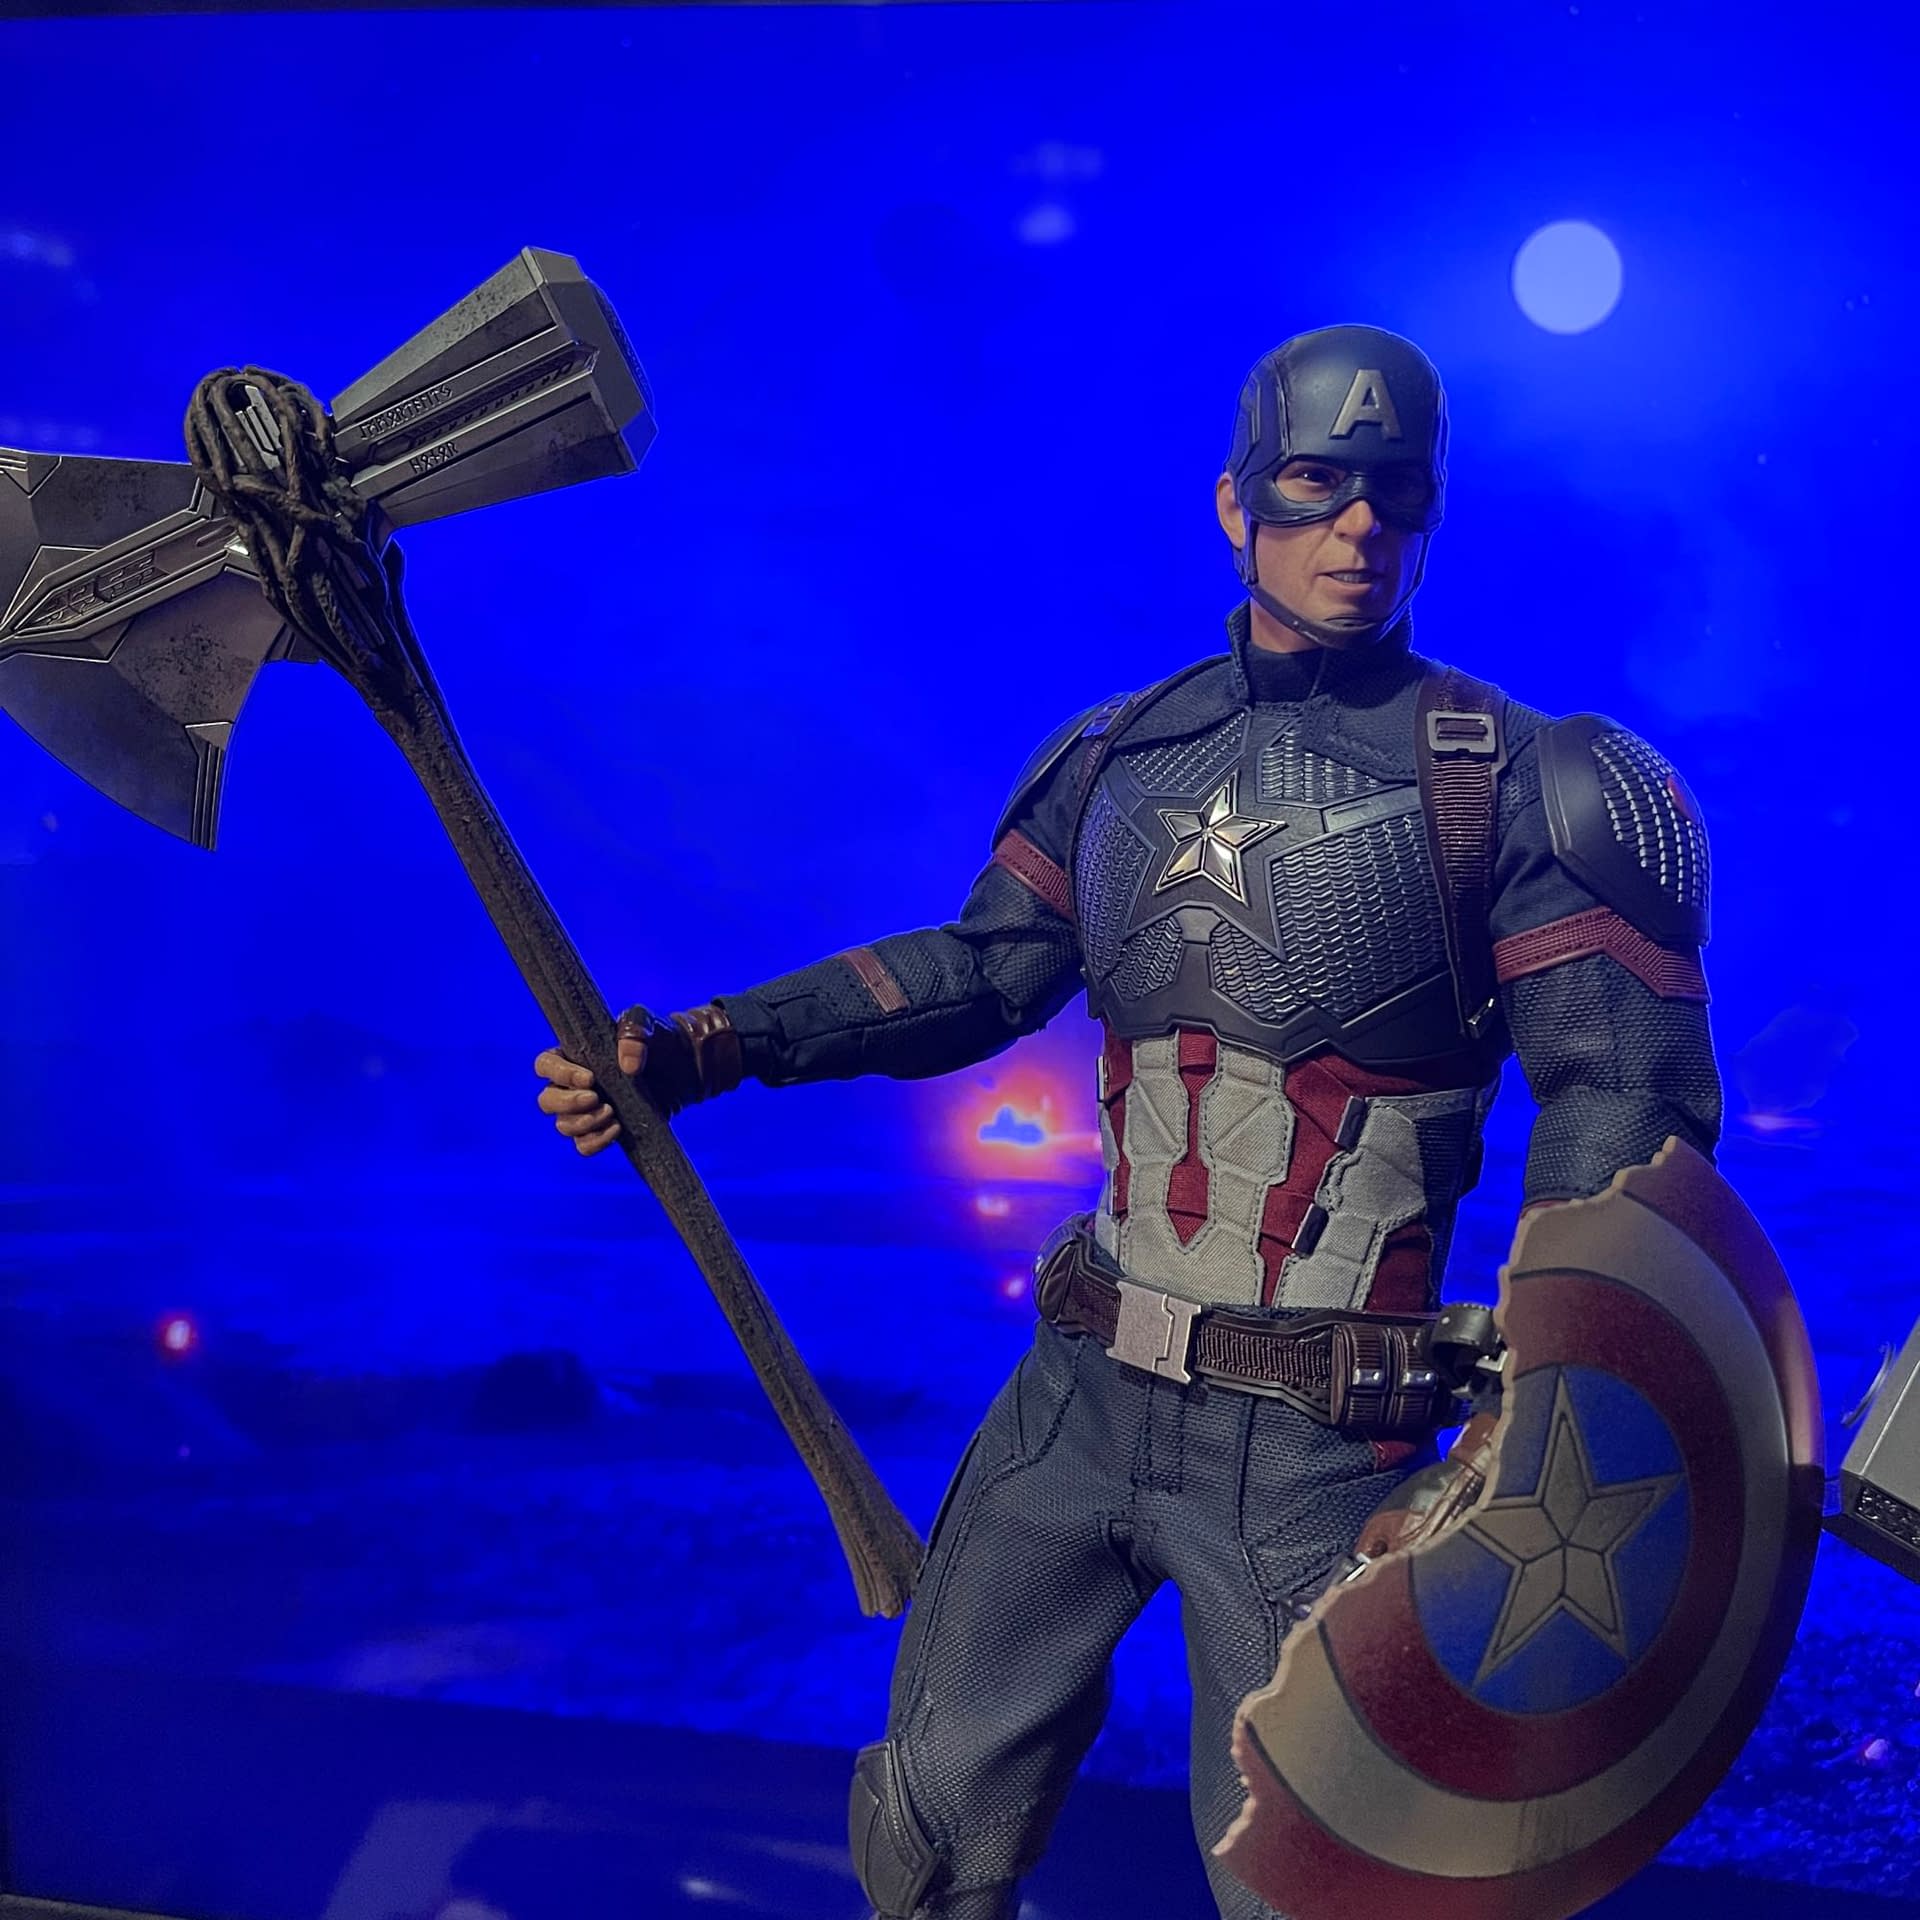 Avengers: Endgame Hot Toys Captain America - The First Avenger 